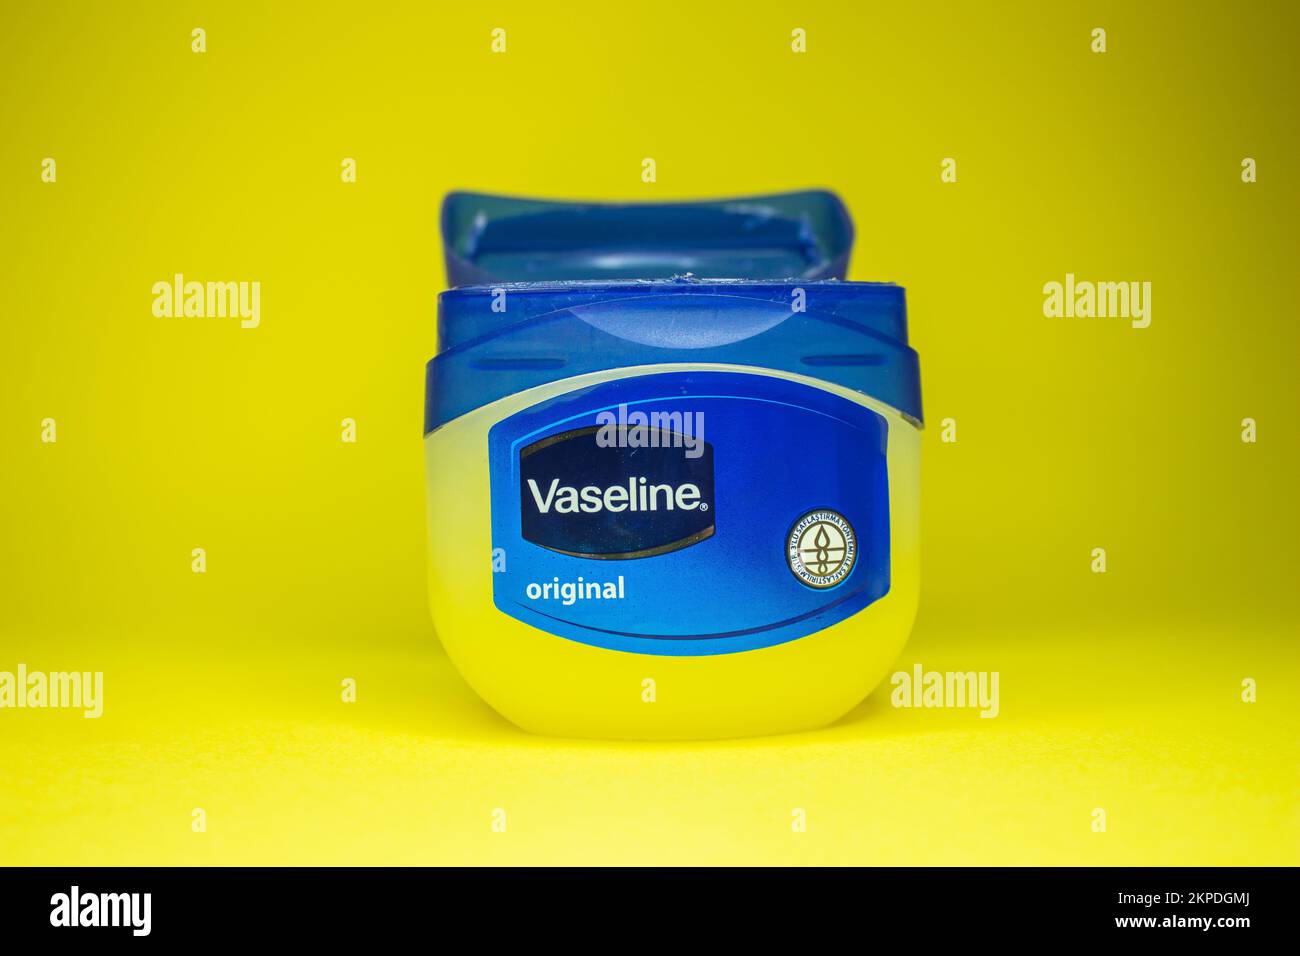 Vaseline bottle on yellow background. Skin care product vaseline or petroleum jelly. Afyonkarahisar, Turkey - November 19, 2022. Stock Photo